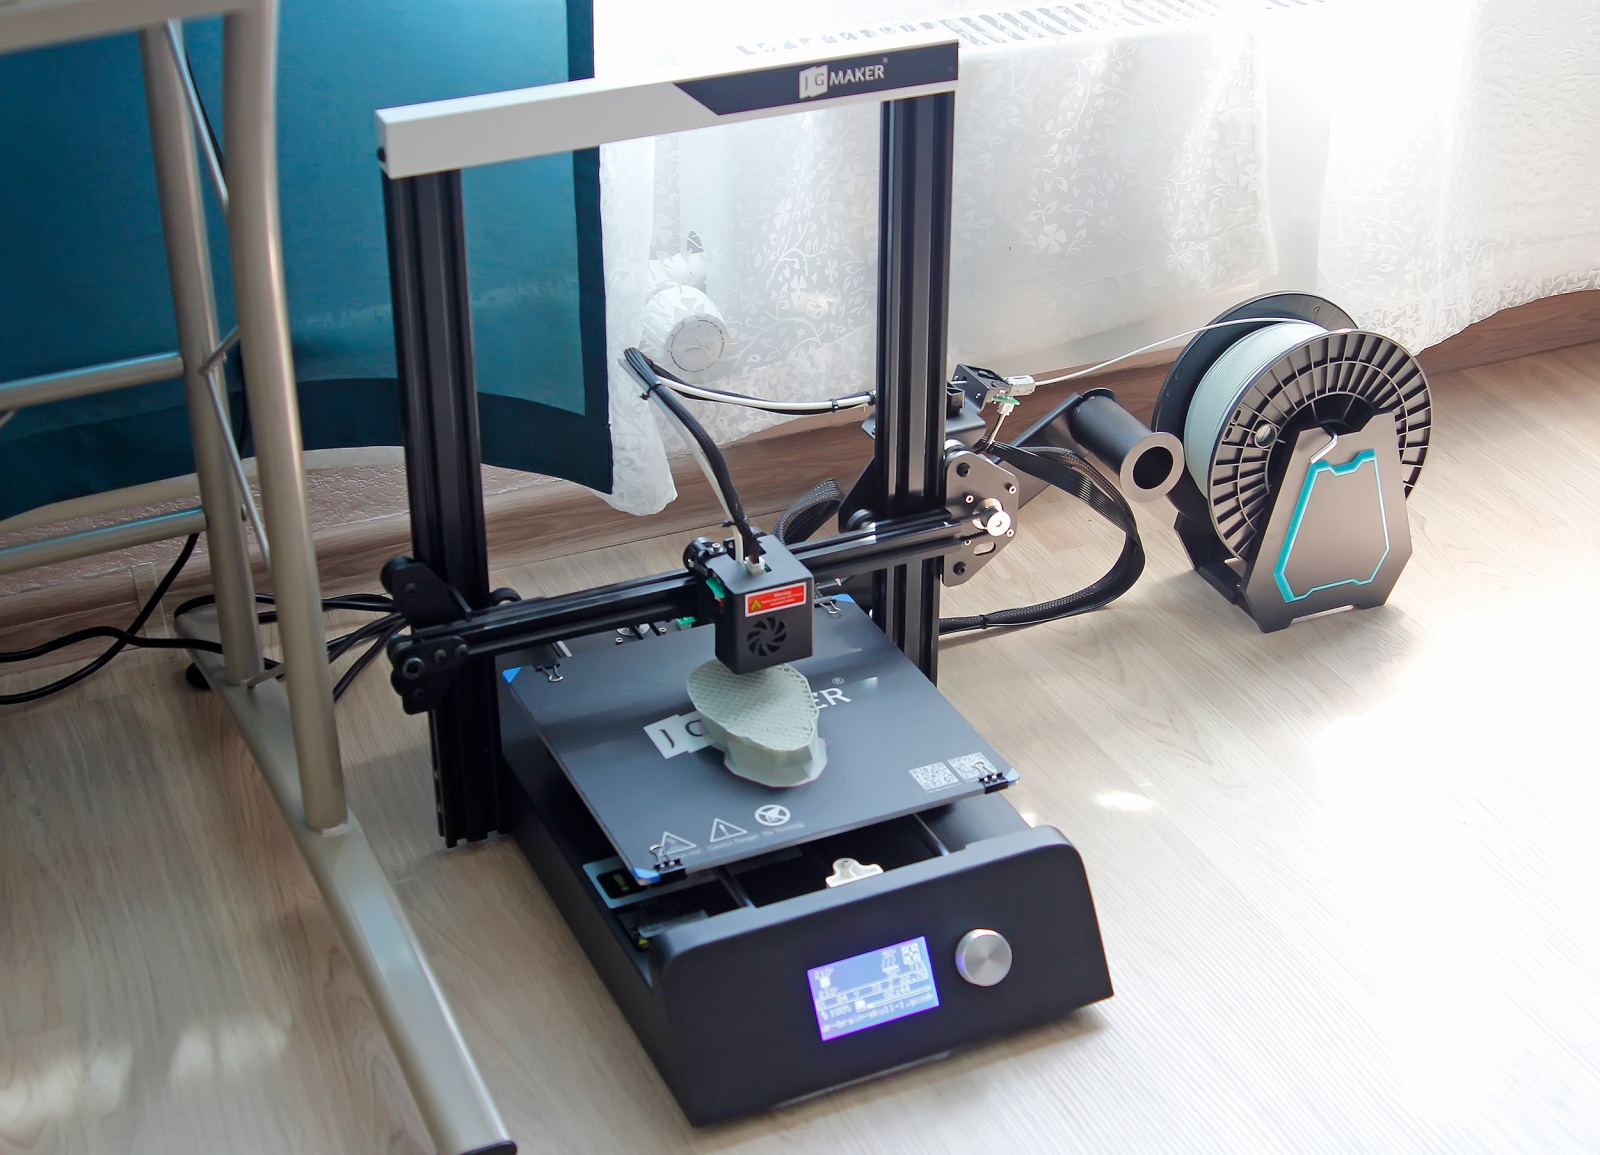 JG Maker — достойная альтернатива недорогим 3D-принтерам для начинающих - 40